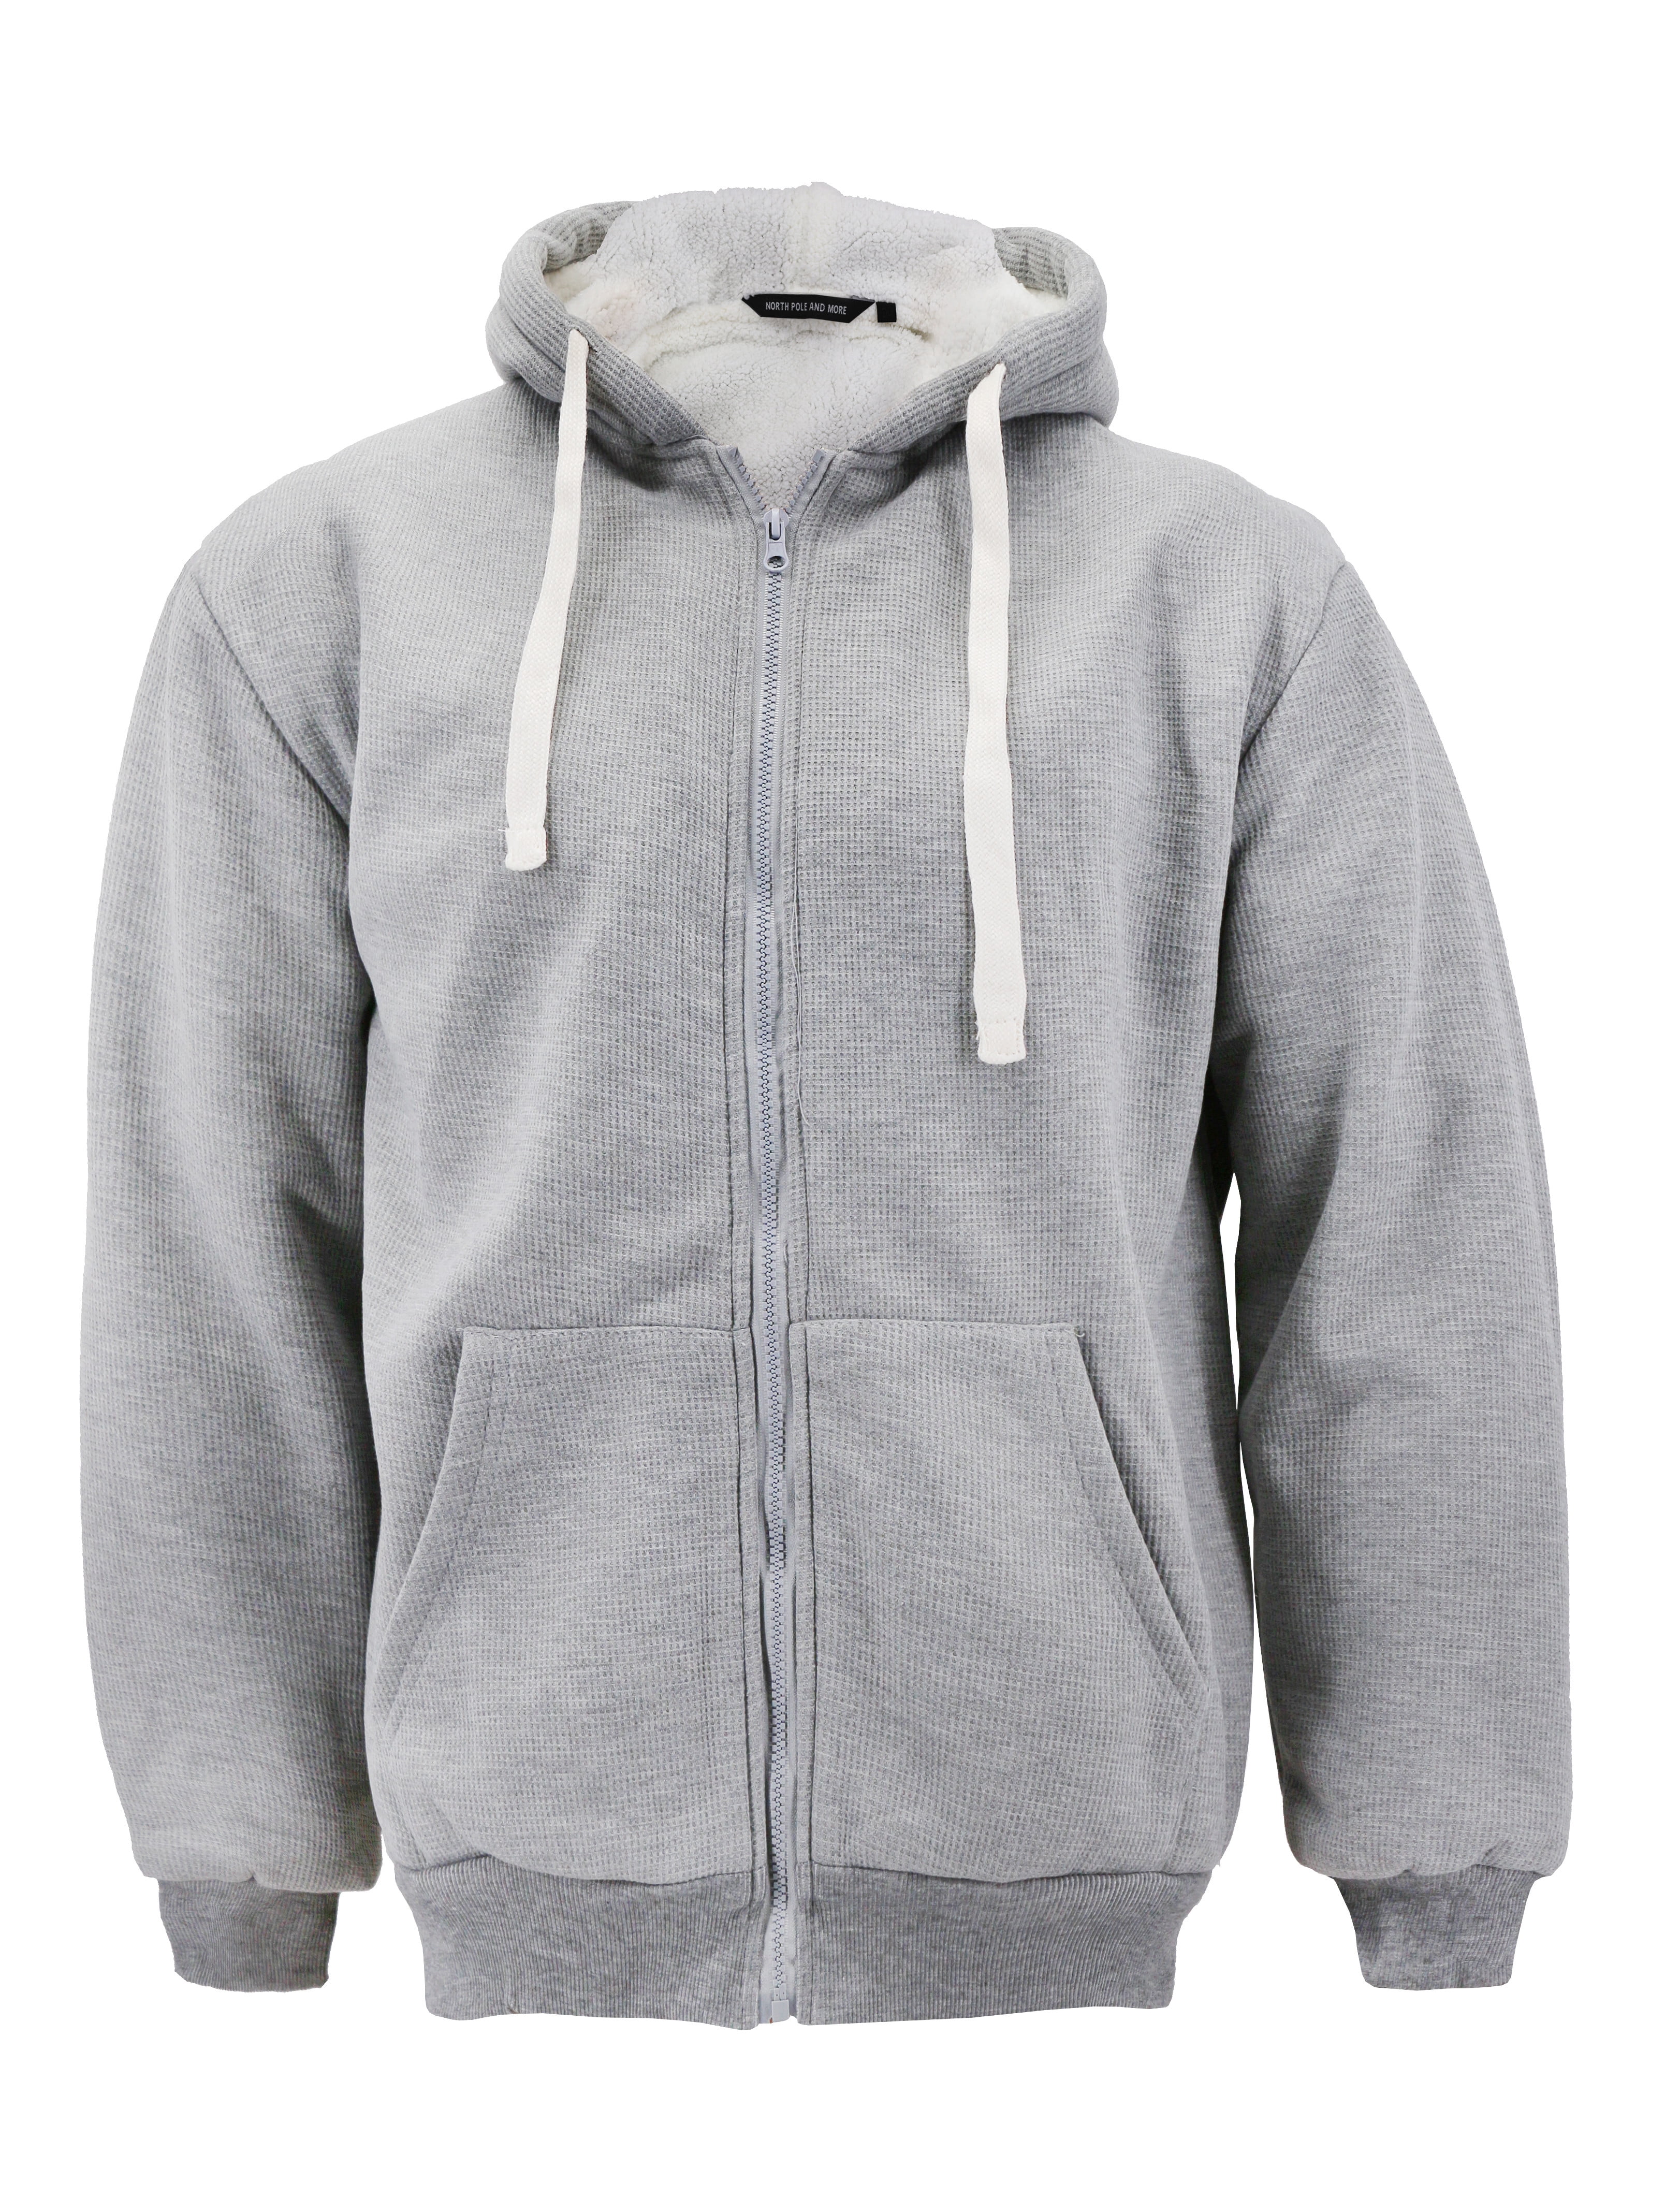 Oversized Grey Zip Up Hoodie Men : Christy Hoodie | Gray hoodie outfit